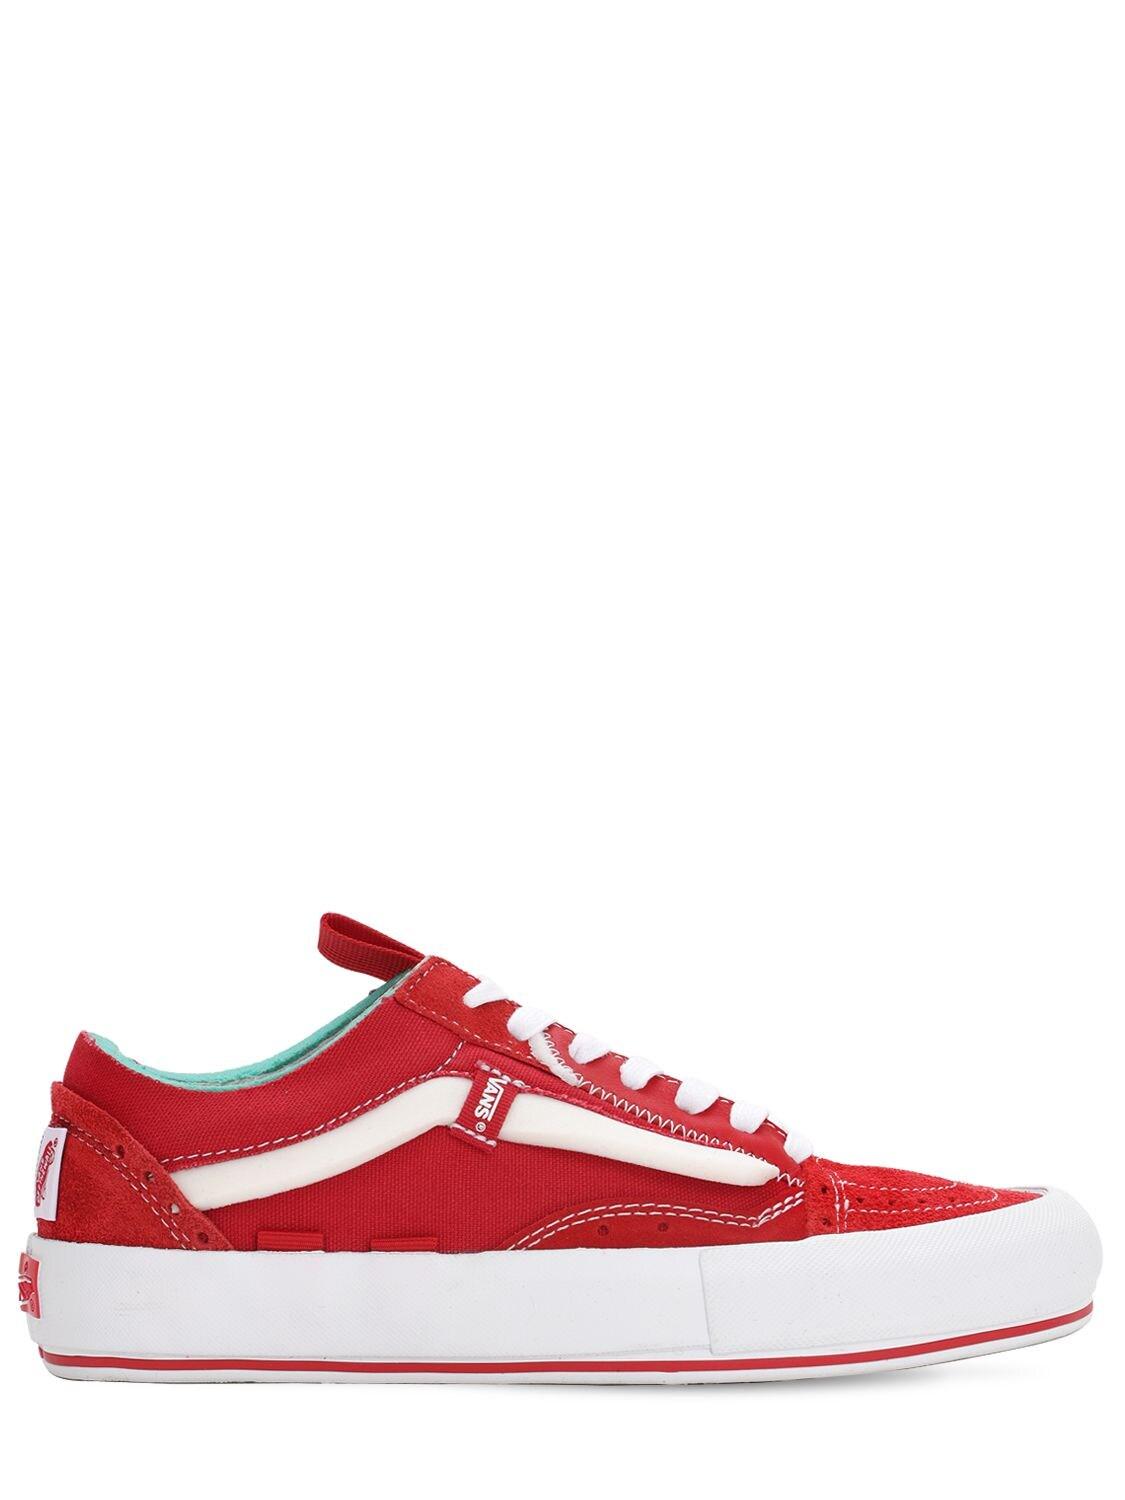 Vans Old Skool Cap Suede & Canvas Sneakers in Red for Men - Lyst